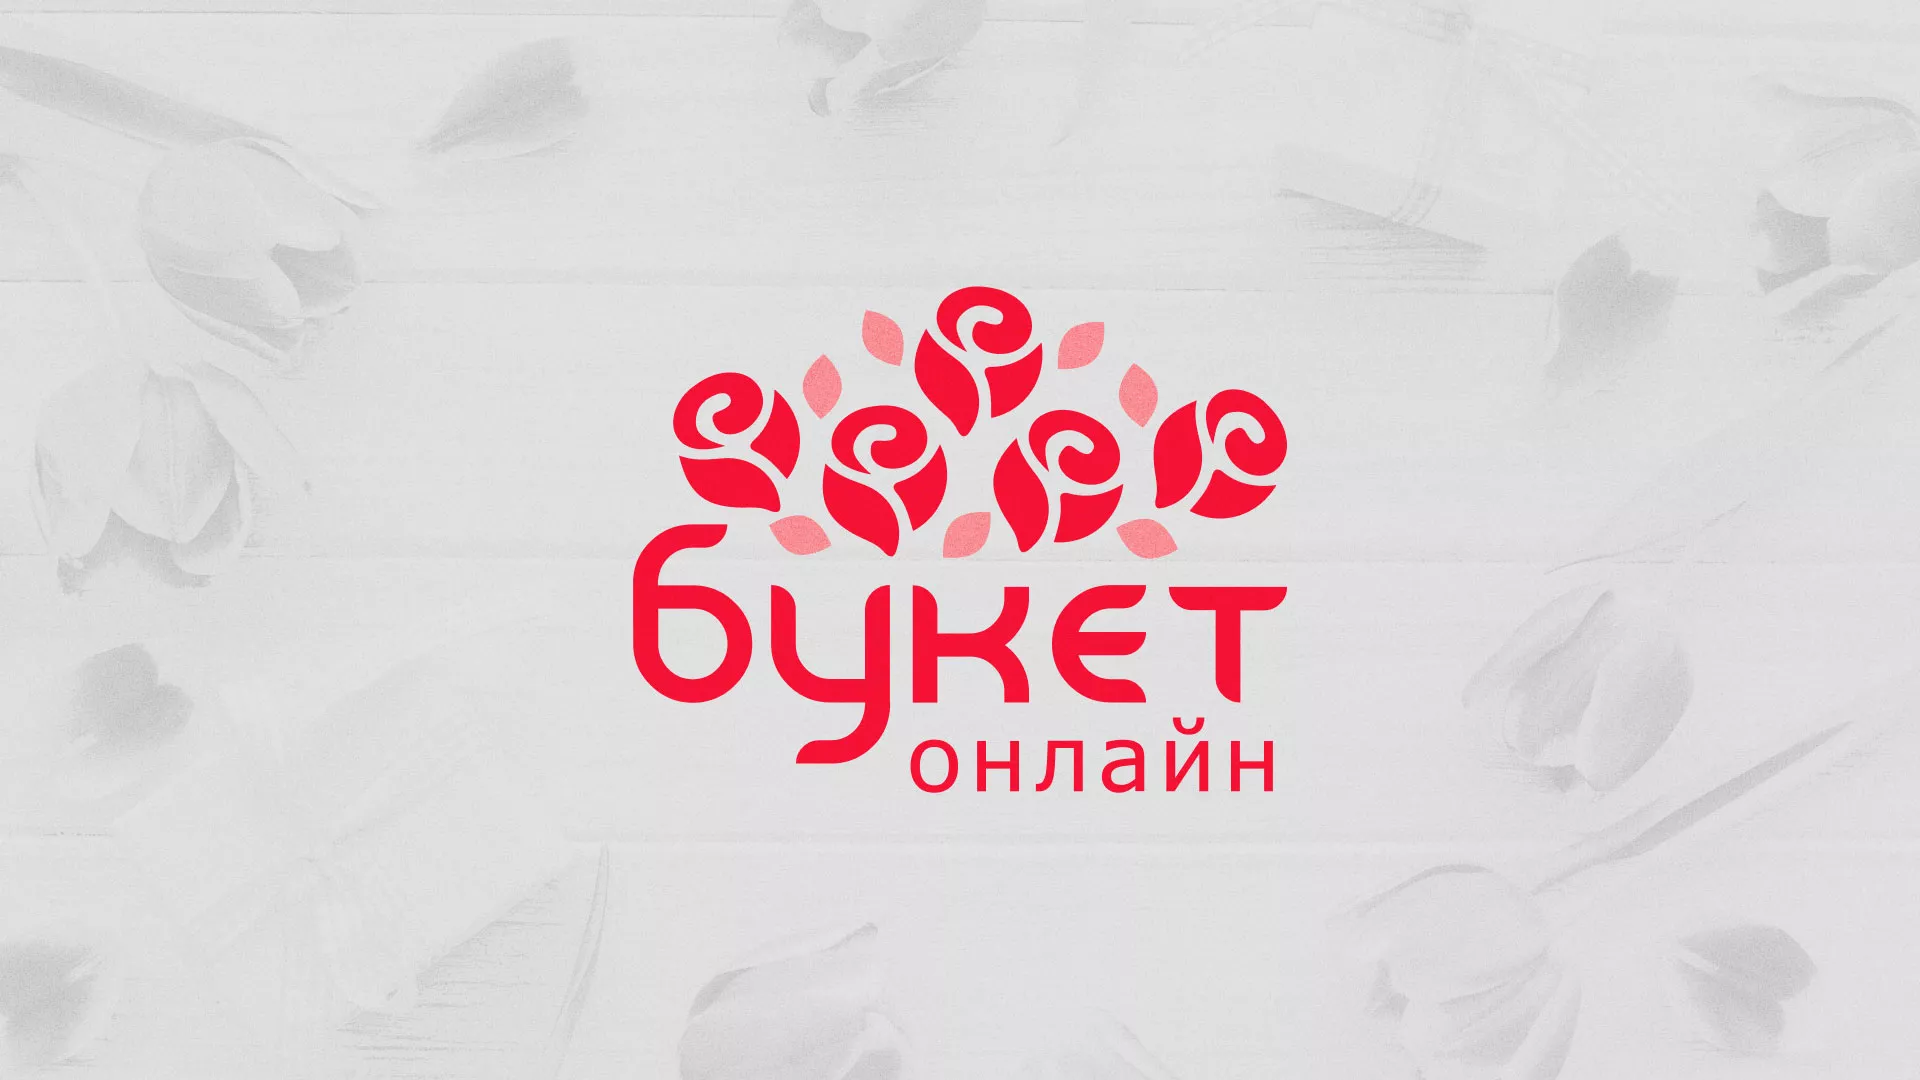 Создание интернет-магазина «Букет-онлайн» по цветам в Иркутске